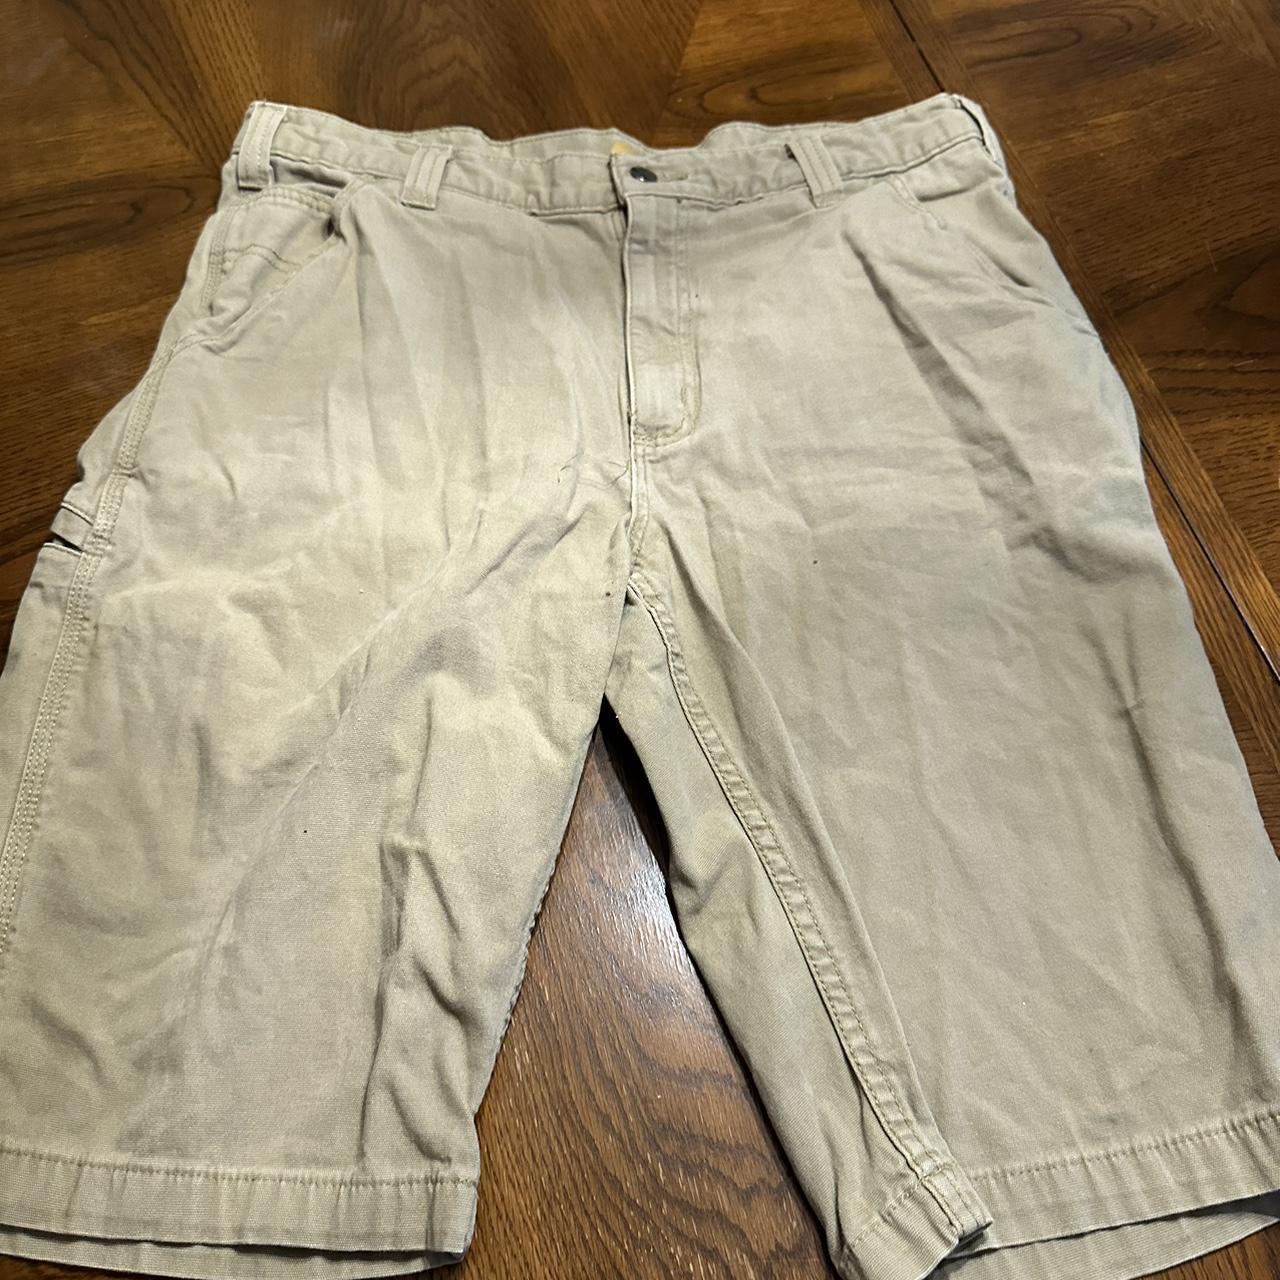 Mens carhartt shorts Six’s 36 waist - Depop